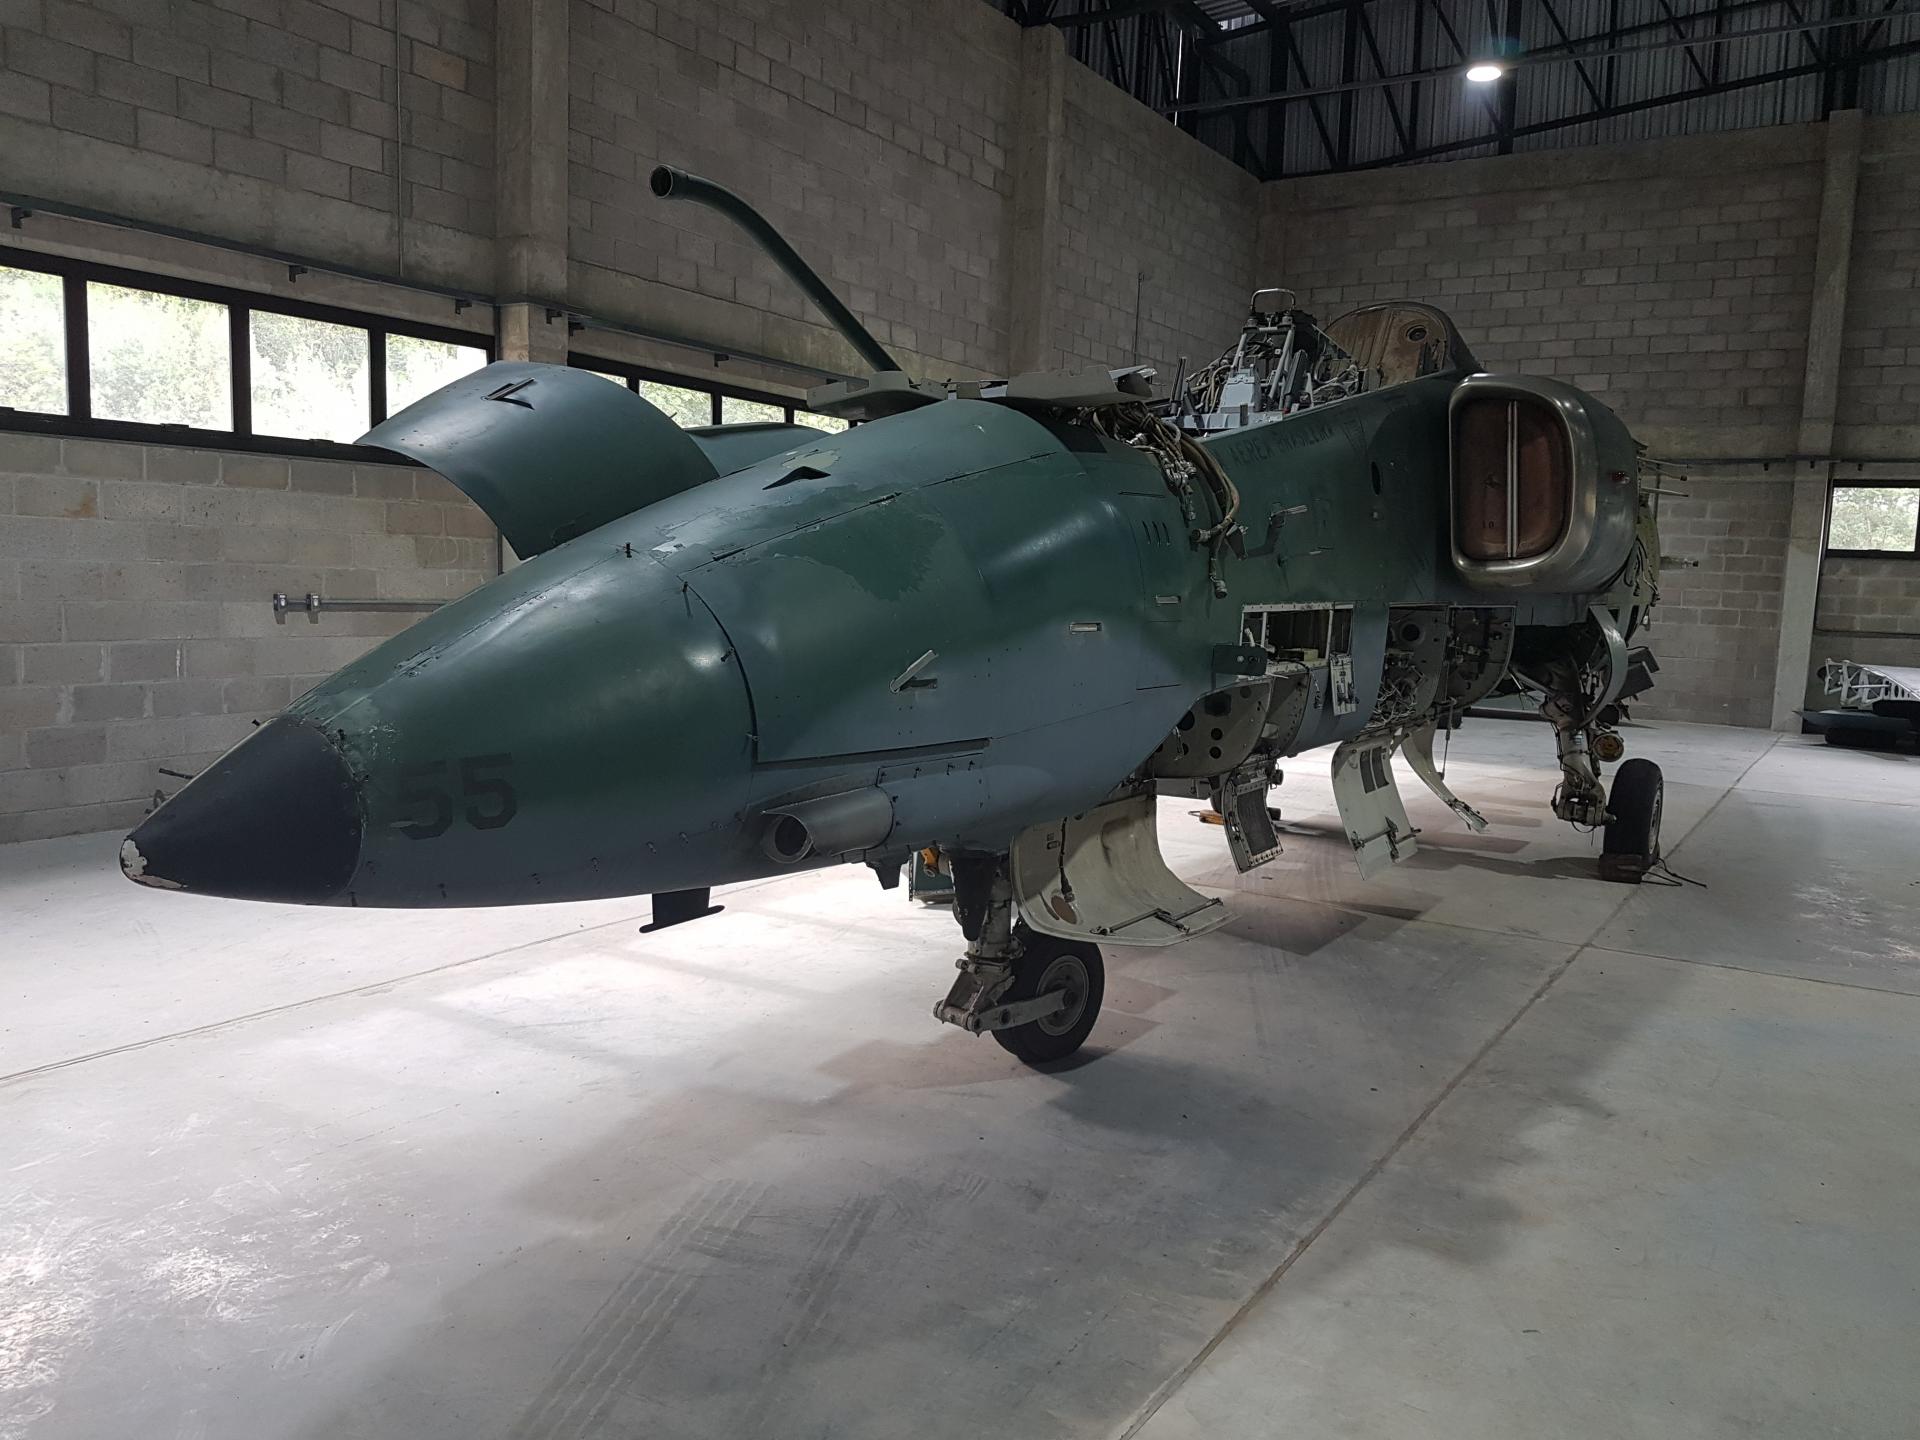 Caça AMX A-1 doado Força Aérea Brasileira (FAB)